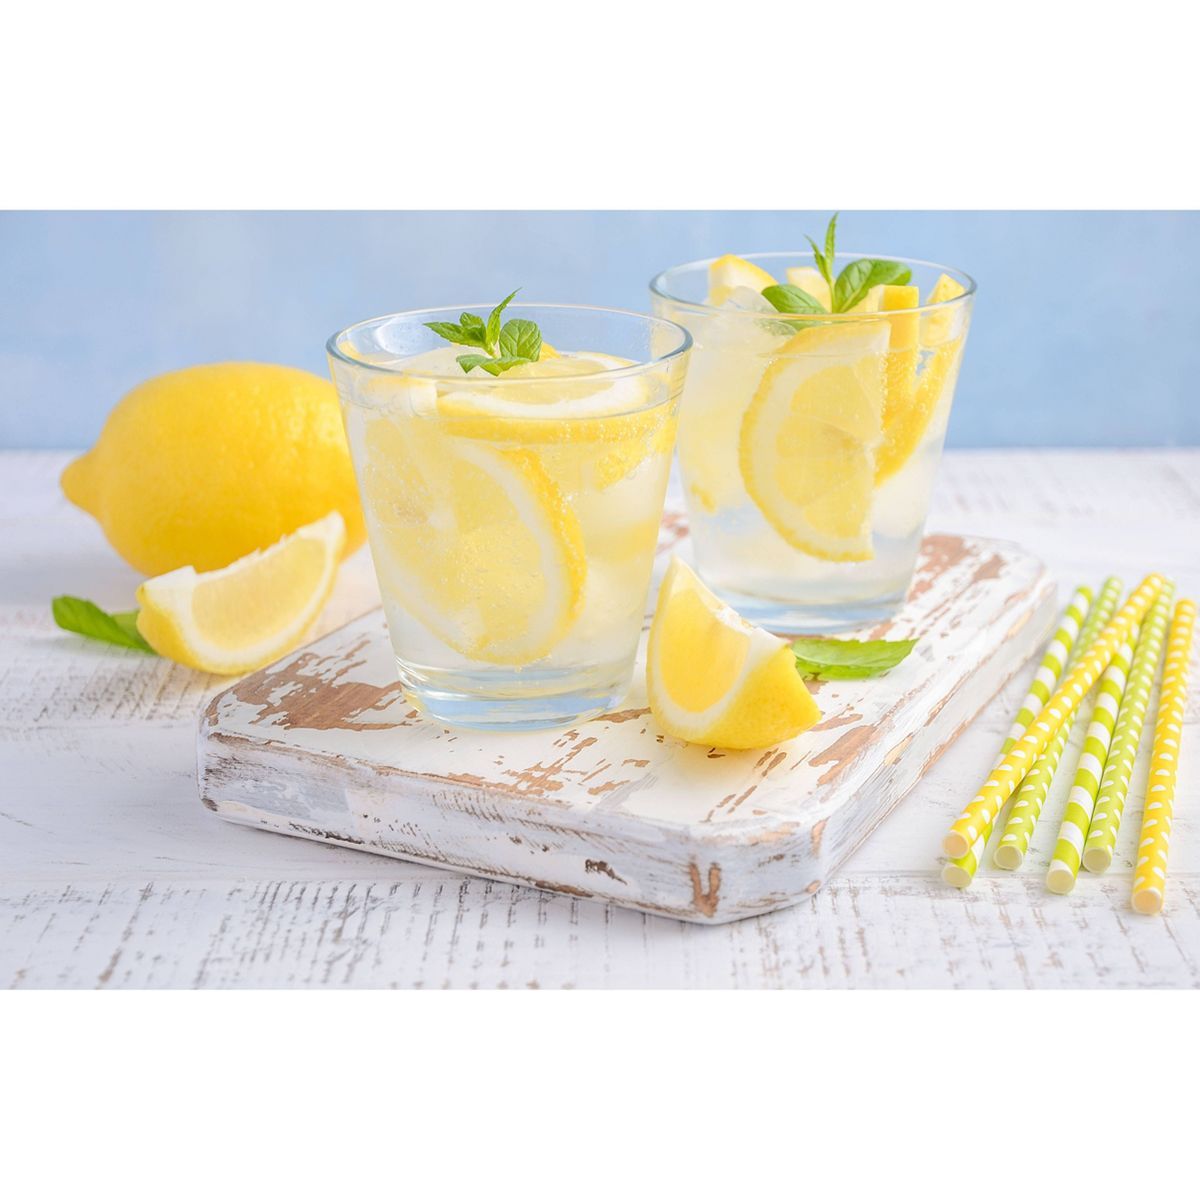 Lemon - each | Target